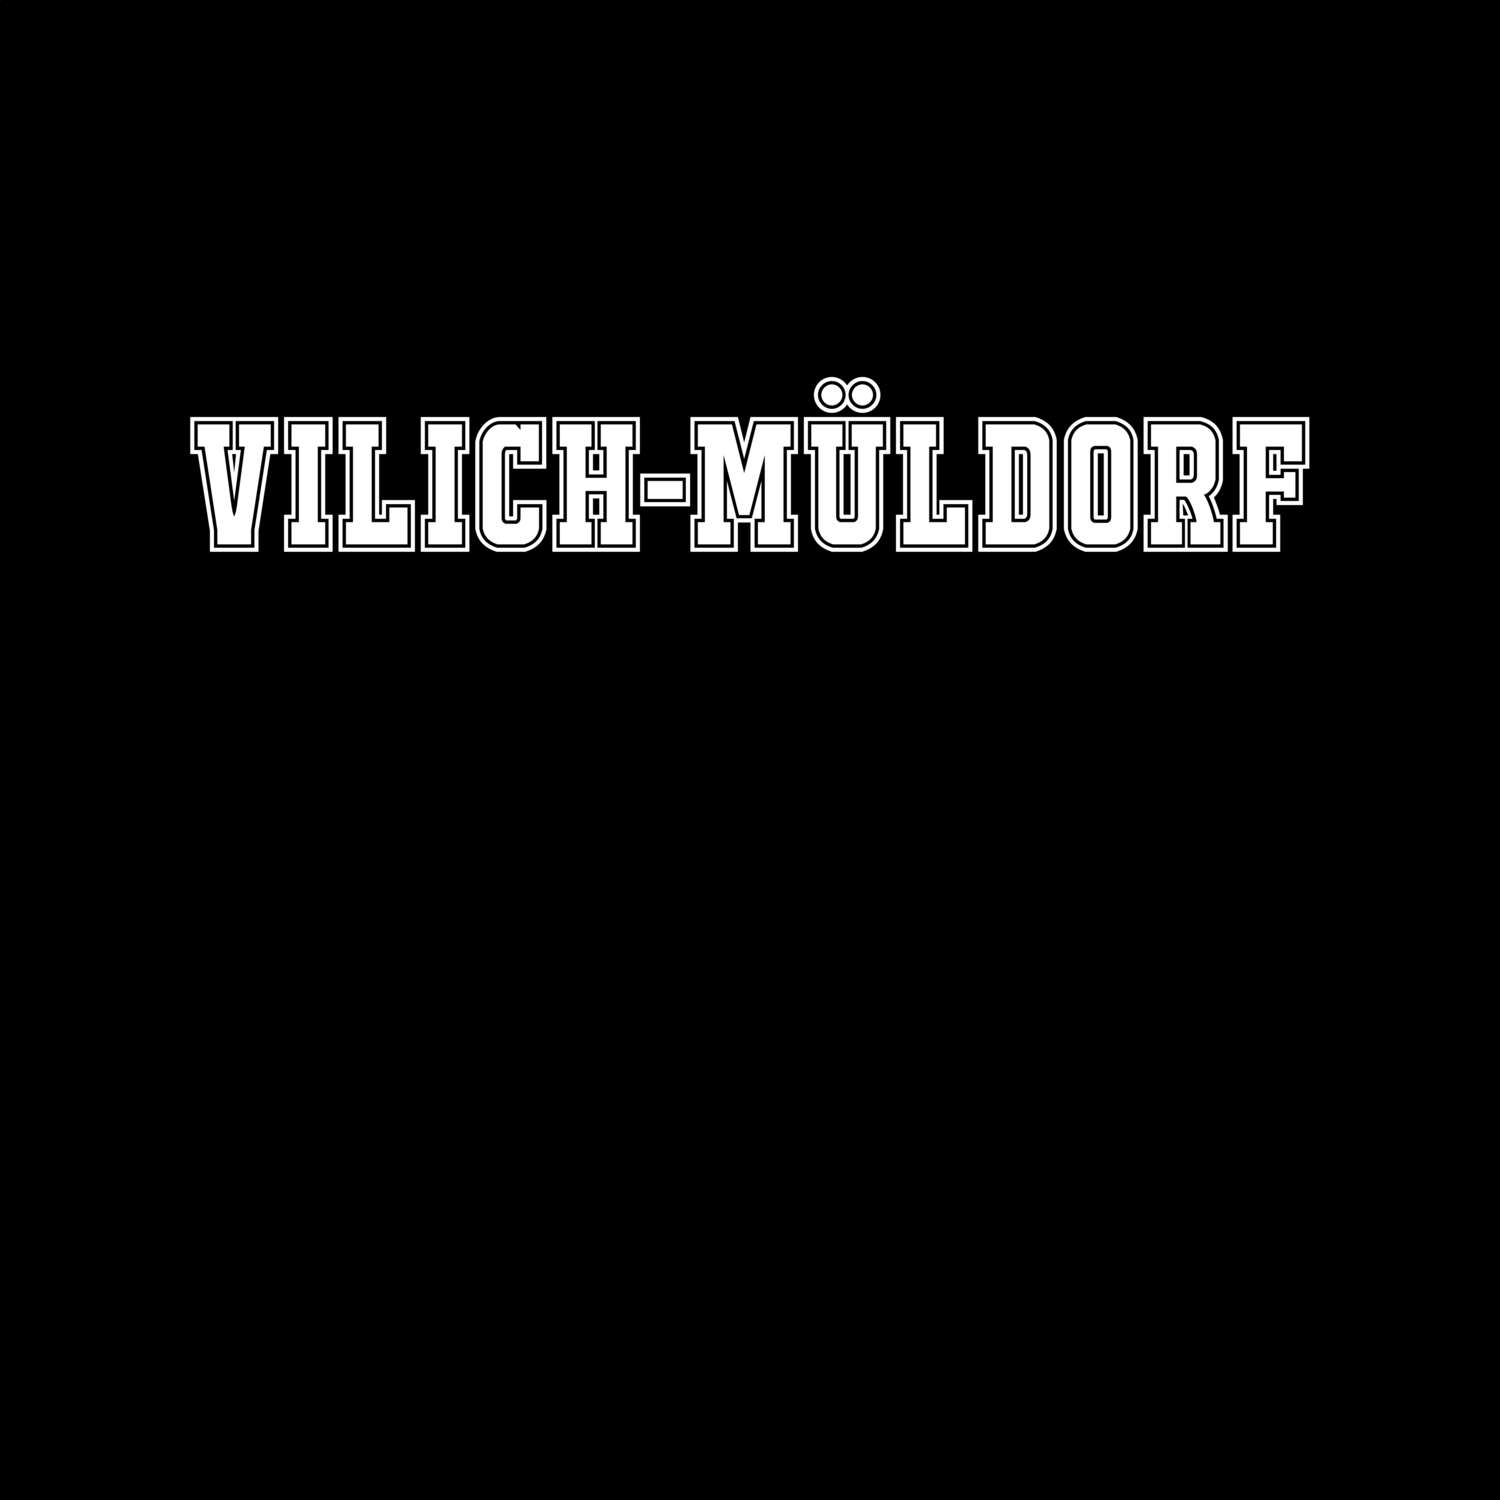 Vilich-Müldorf T-Shirt »Classic«